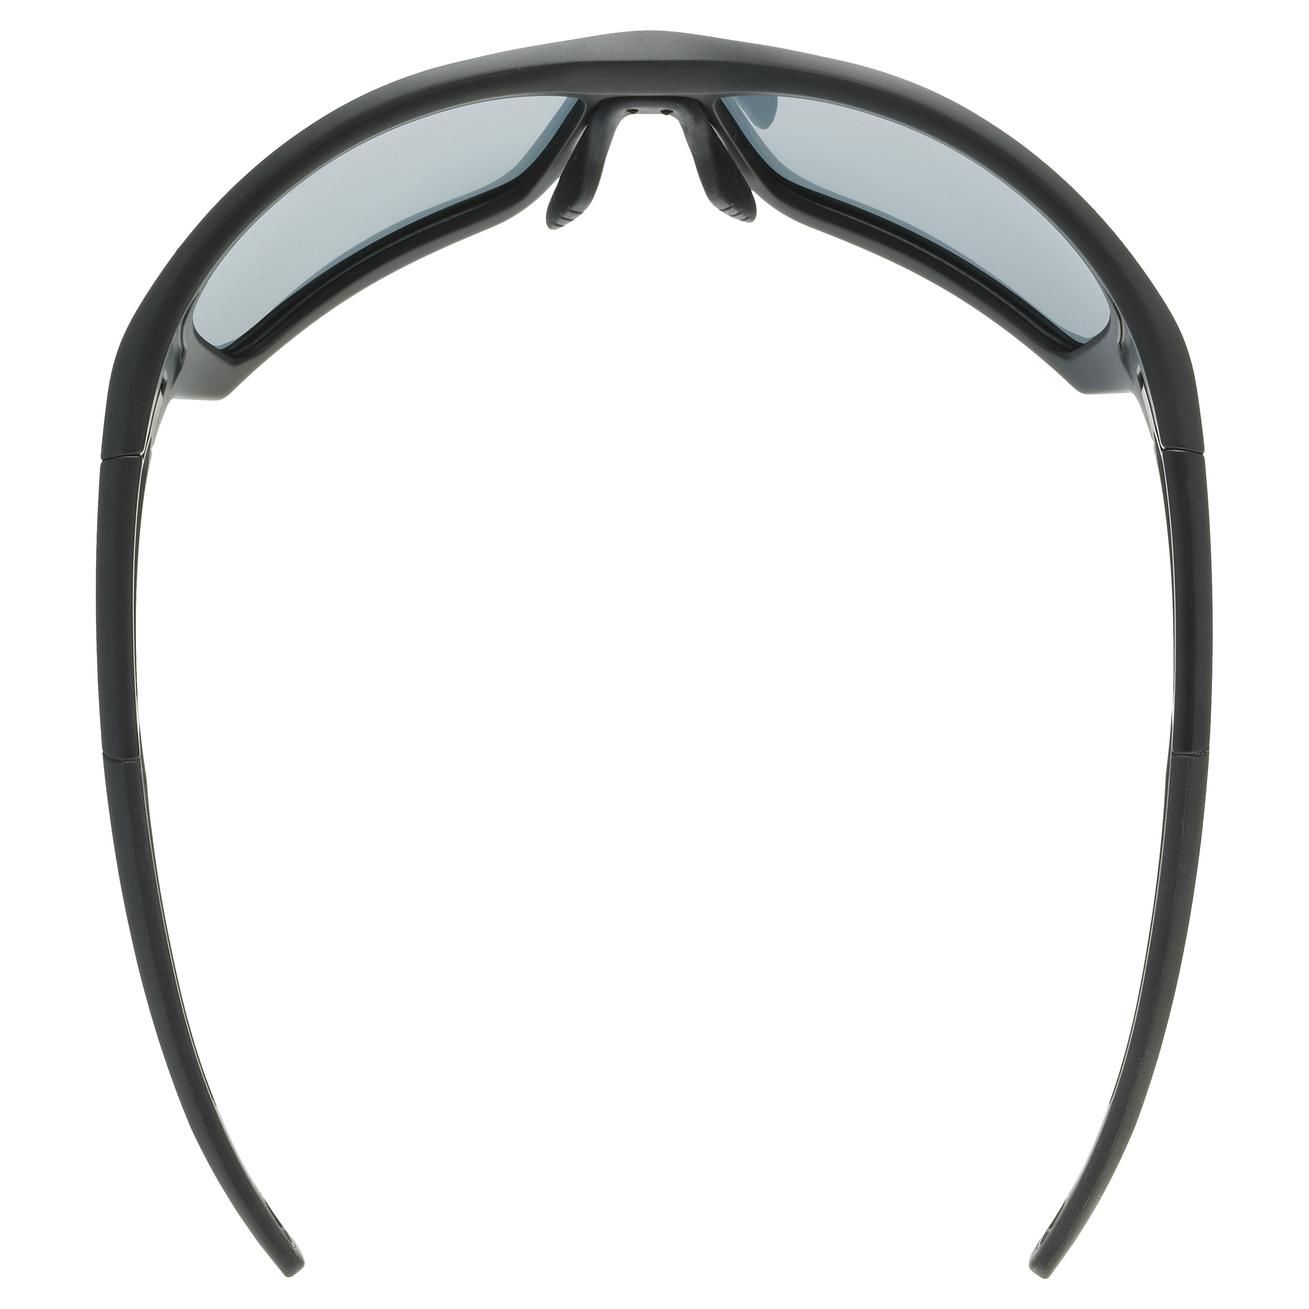 slnečné okuliare uvex sportstyle 232 P black